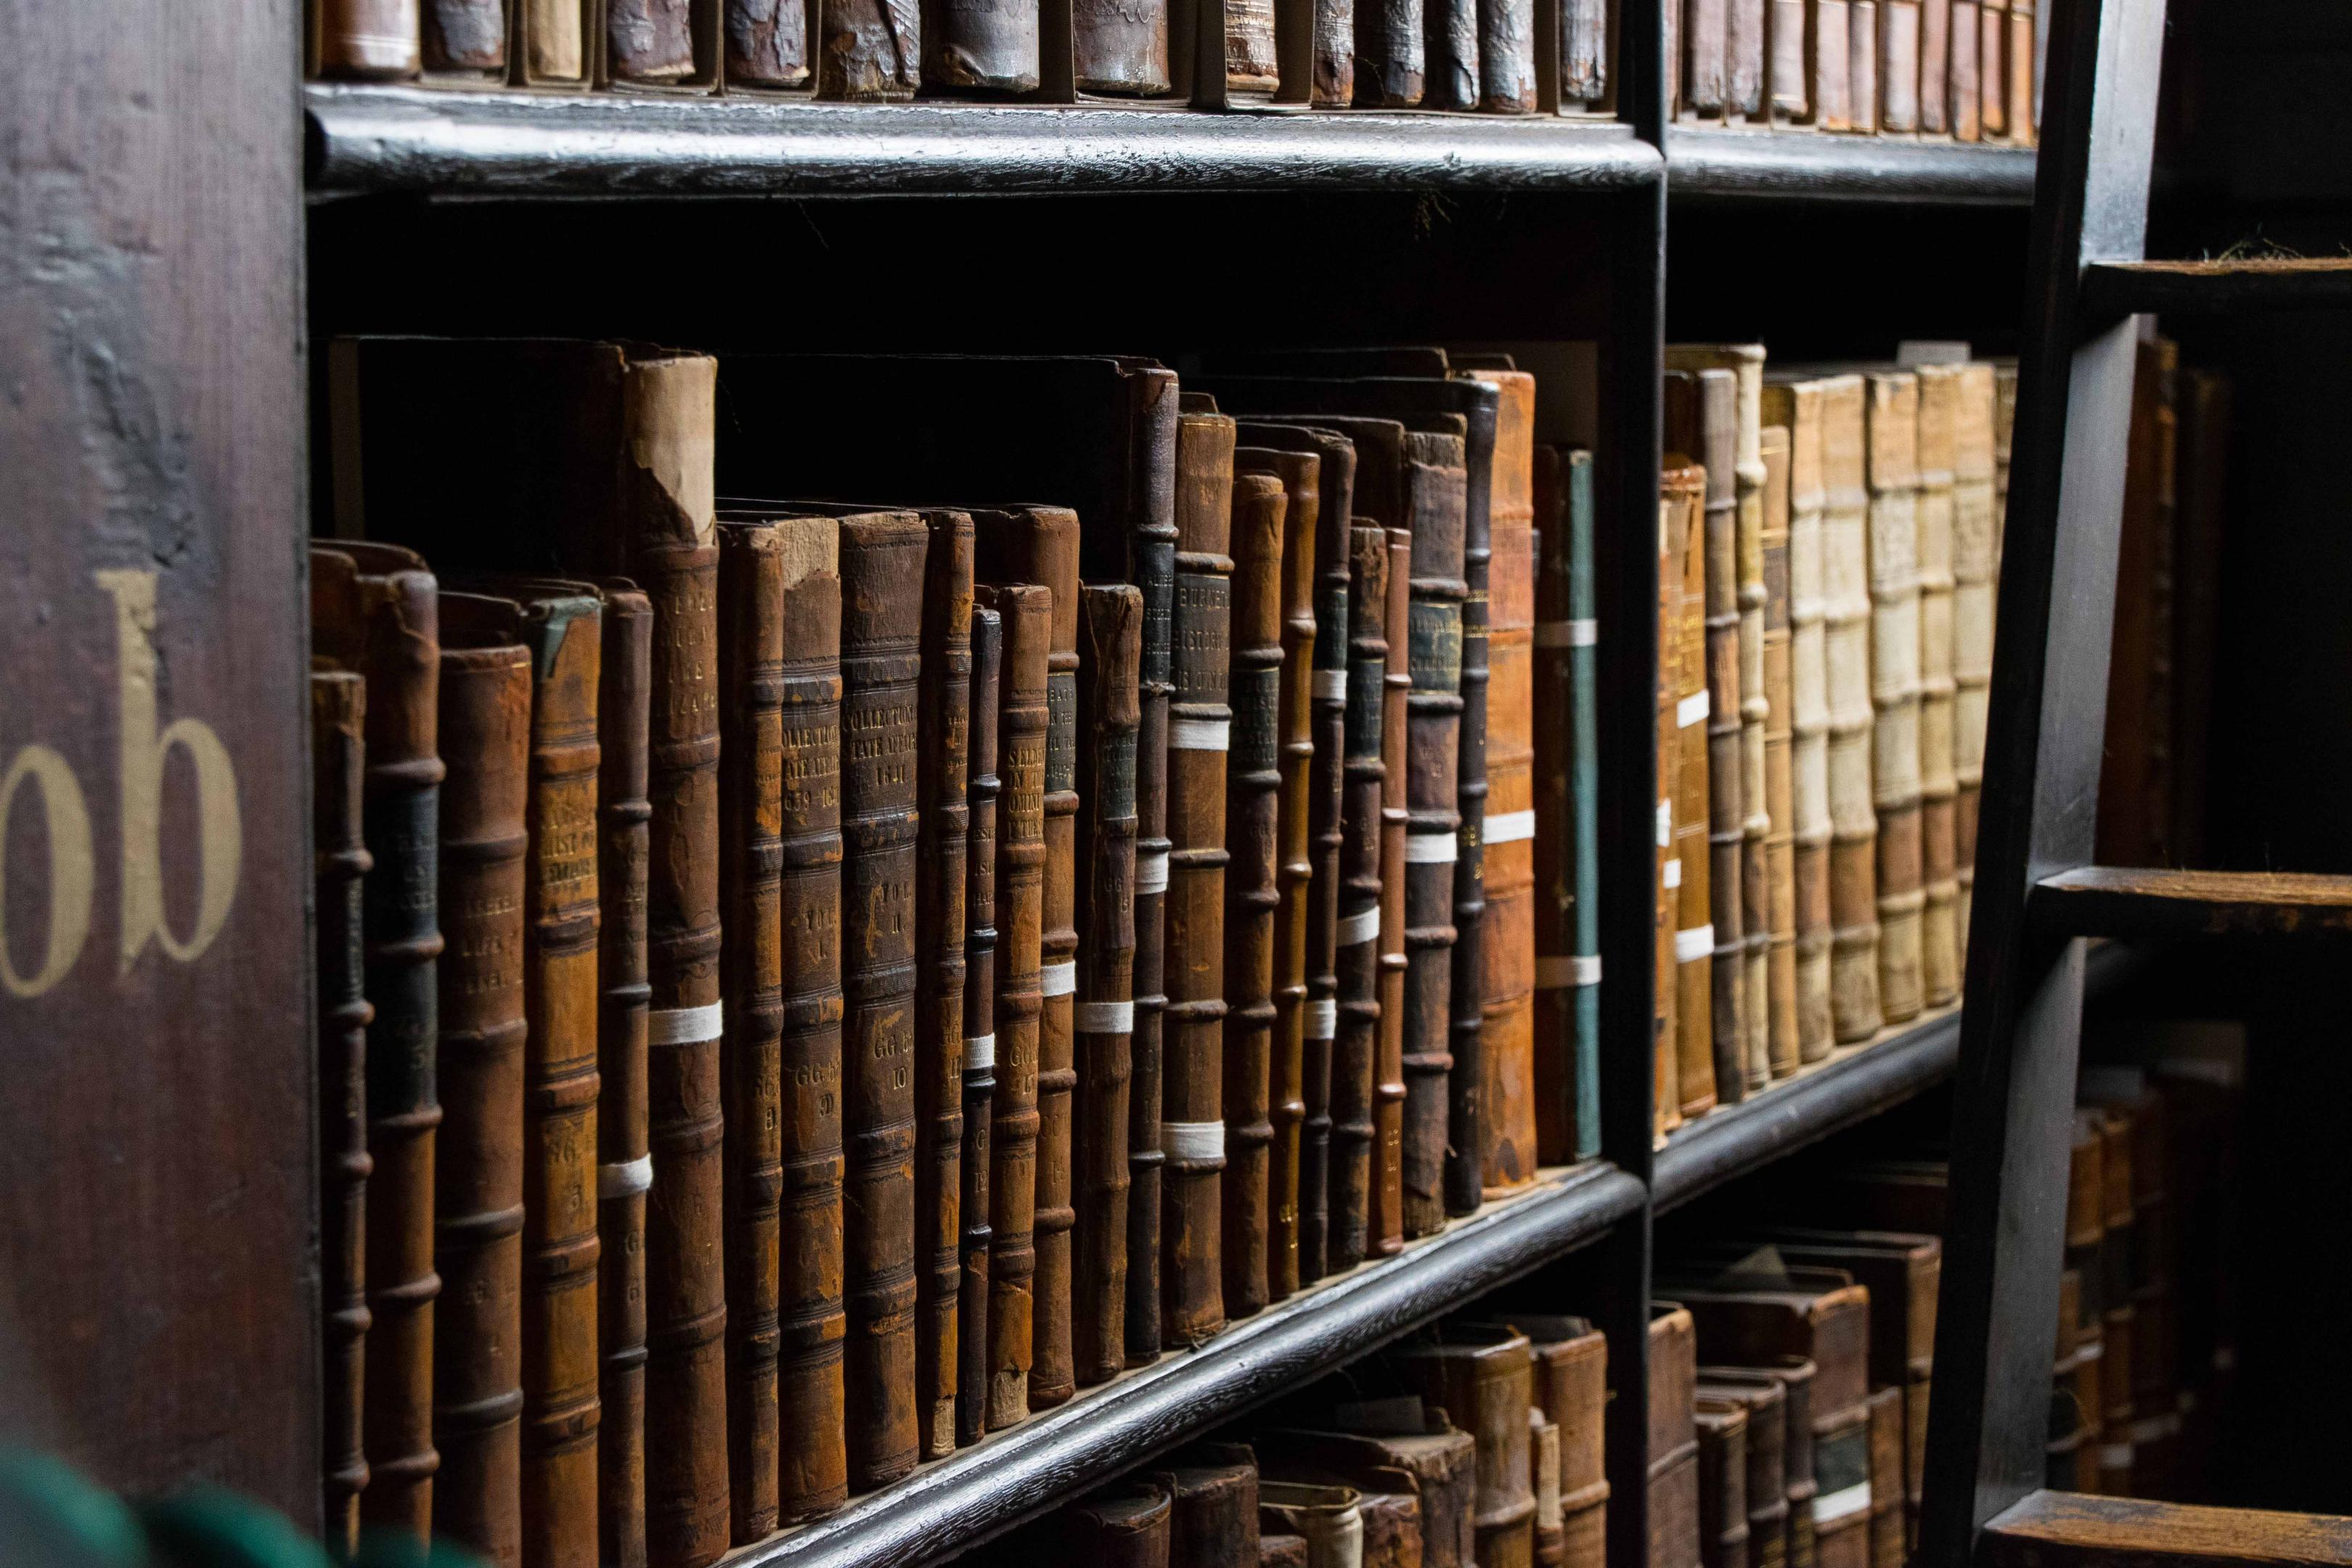 Histoire du Labo de l'ESS, vieux livres dans une bibliothèque